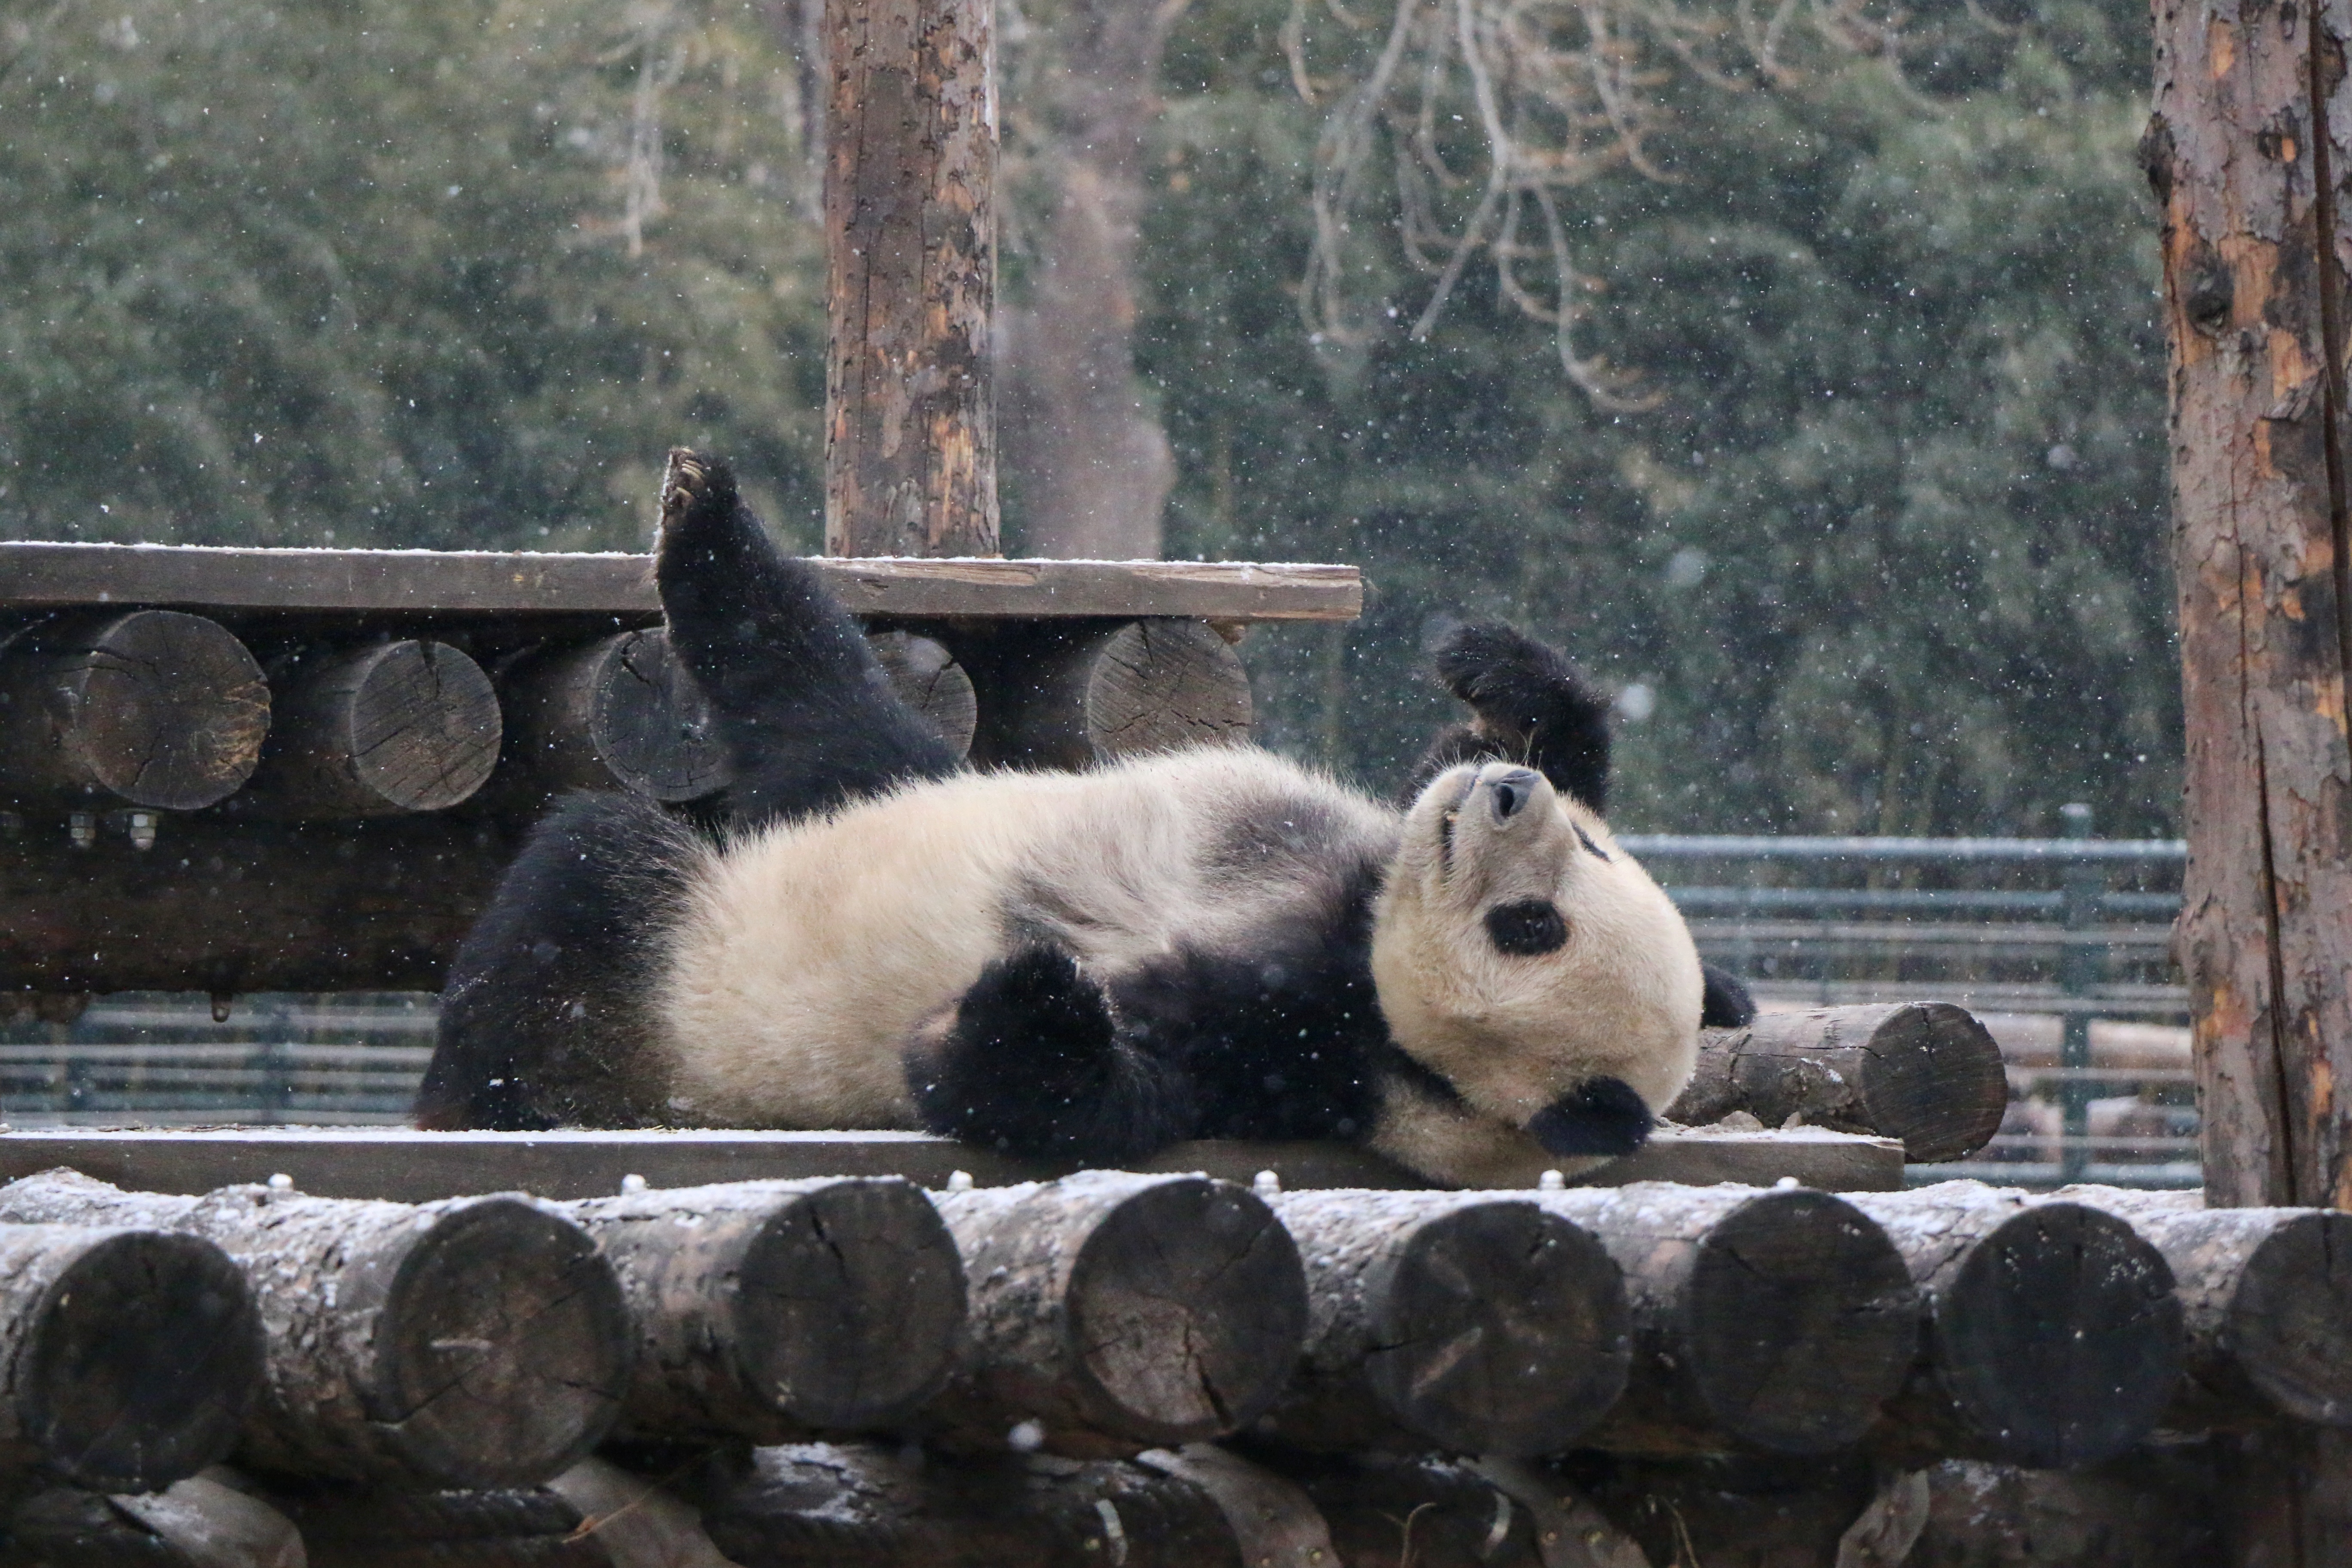 老虎漫步,大熊猫打滚儿,今天动物园成戏雪乐园